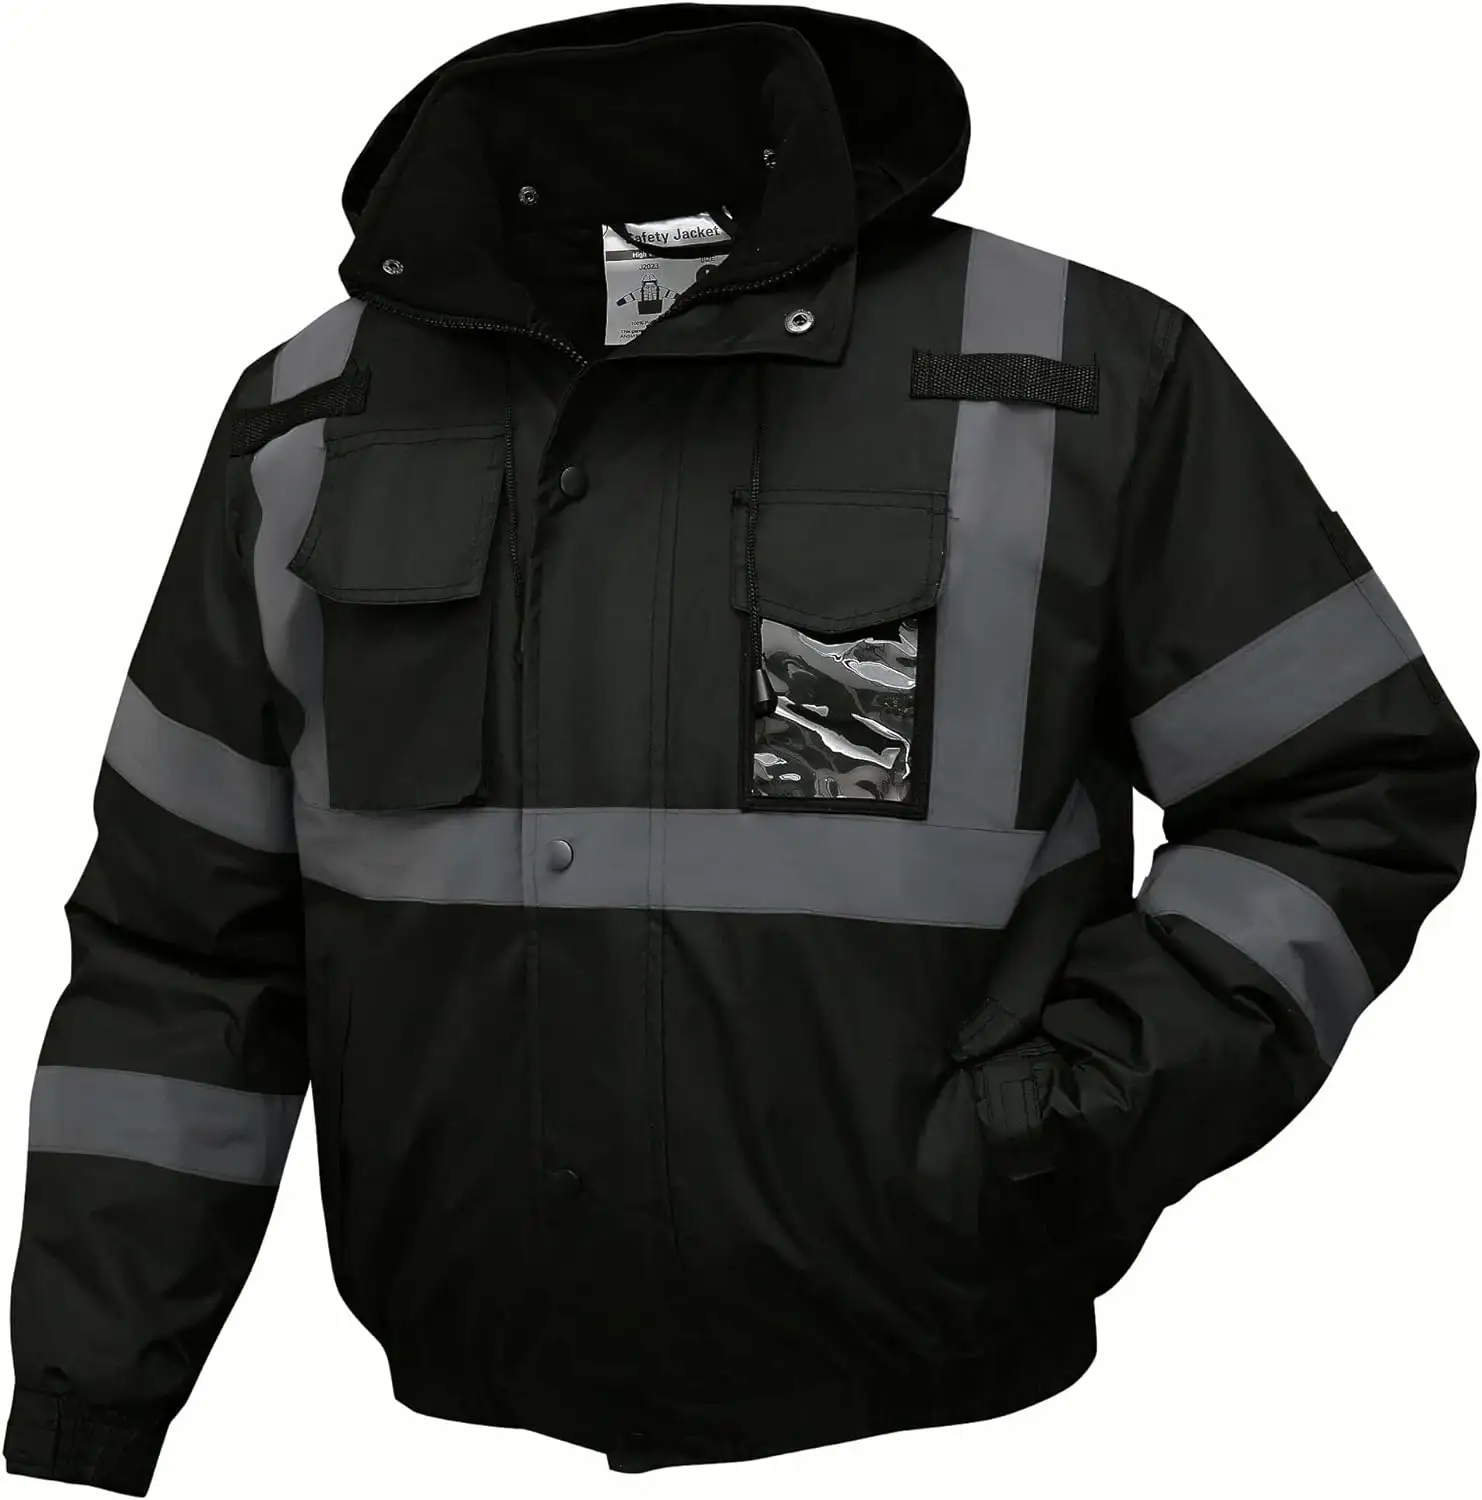 HCSP kustom olahraga tahan air rompi keselamatan musim dingin pakaian keselamatan reflektif visibilitas tinggi pria jaket lari reflektif